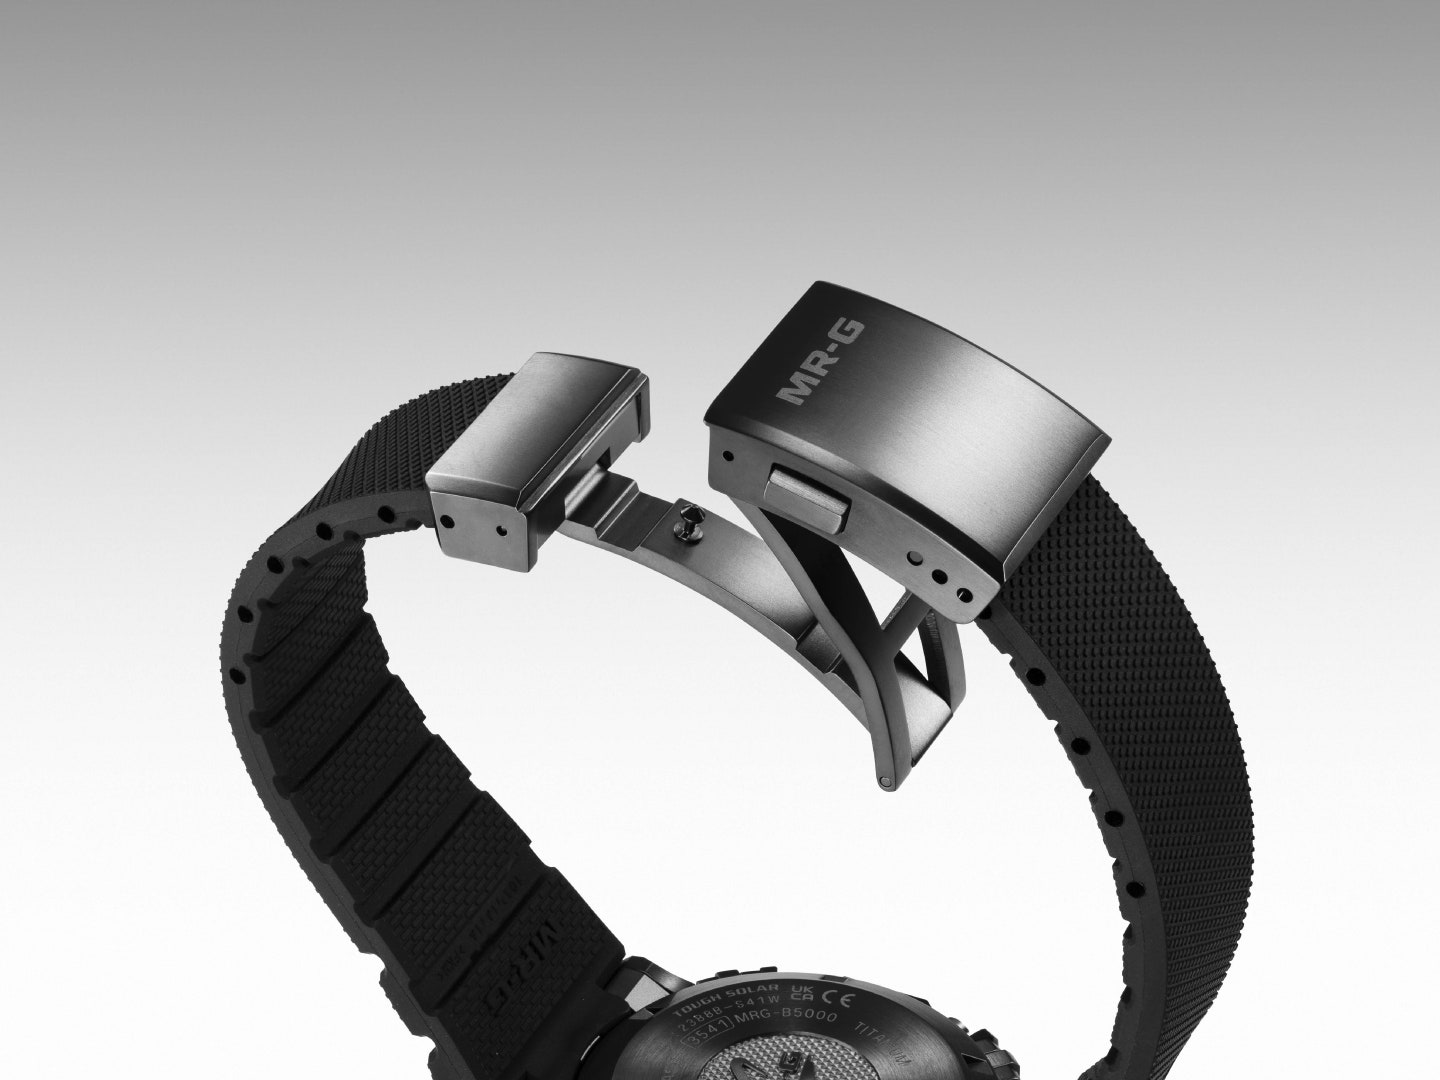 g-shock dévoile une montre indestructible inspirée d'un vieux modèle de 1983